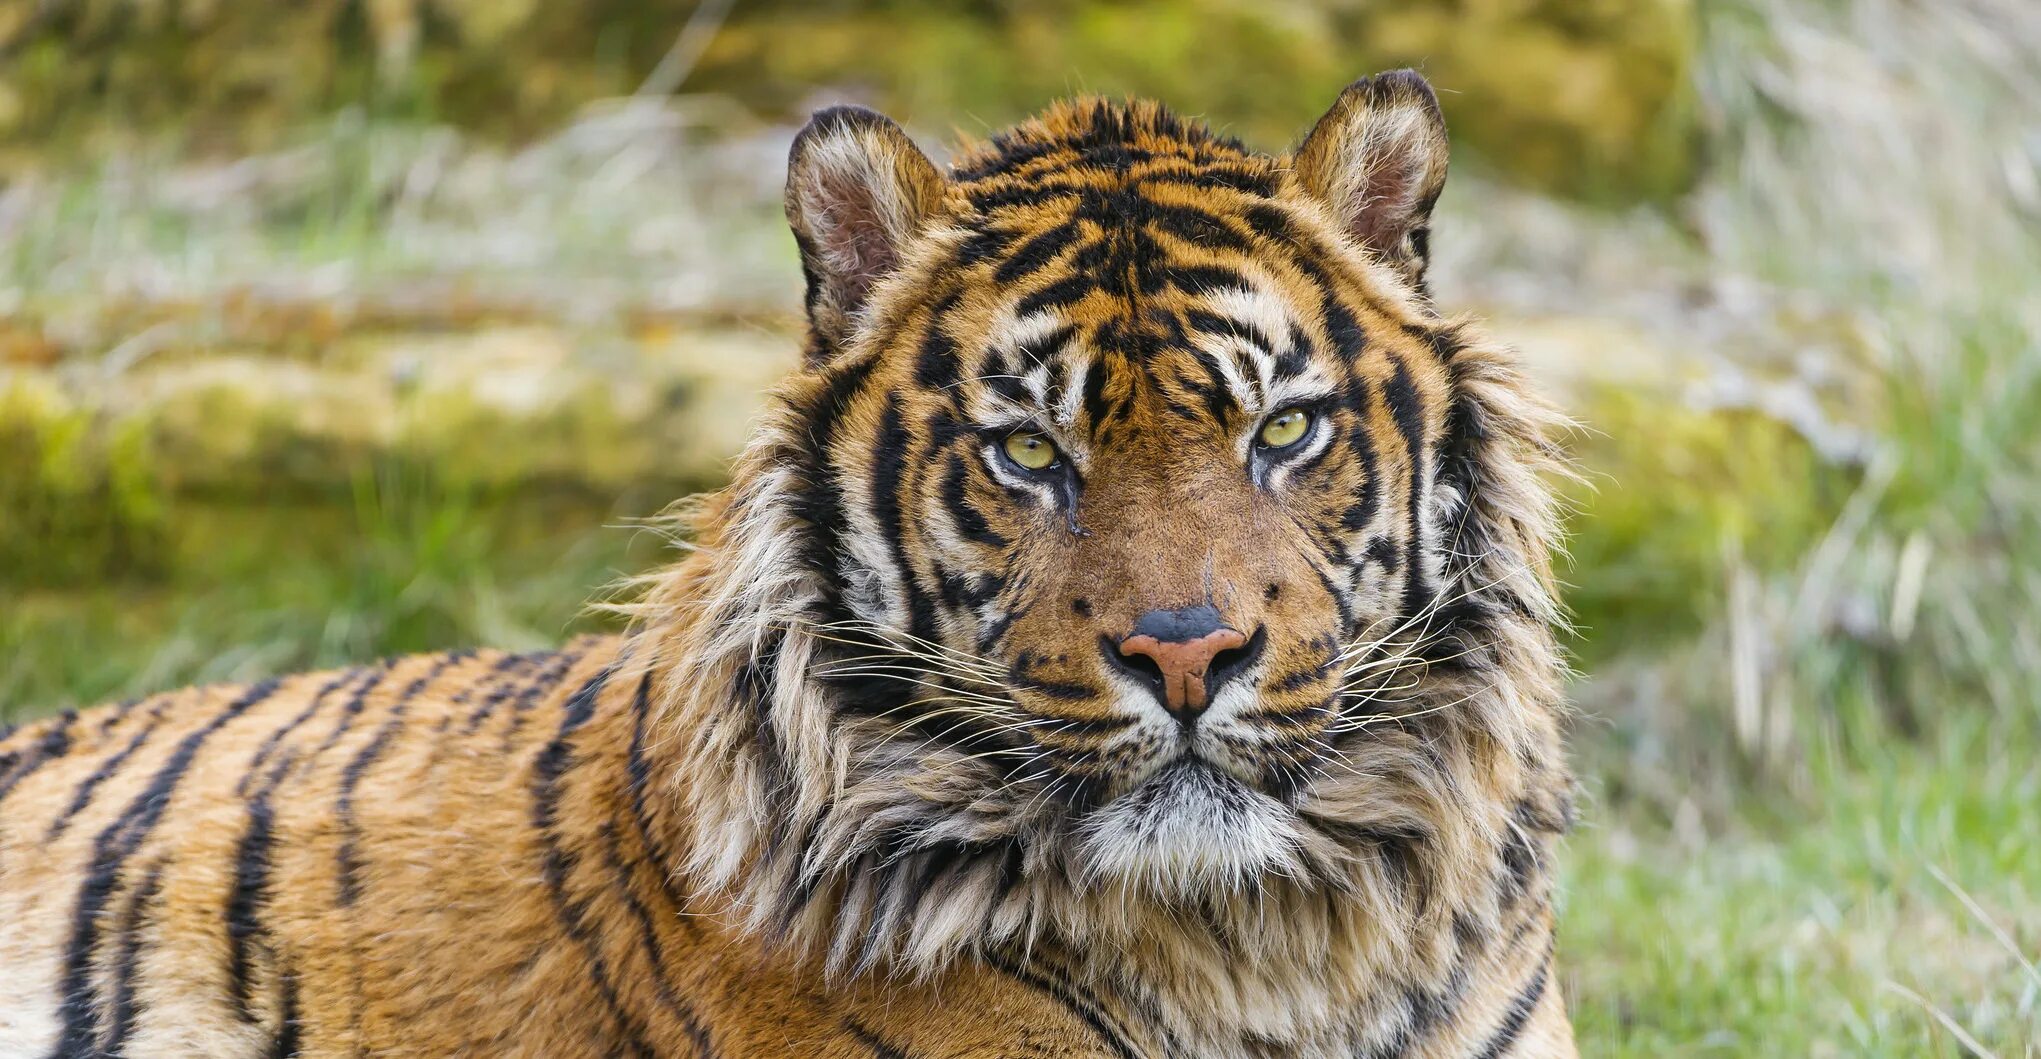 Суматранский тигр. Тигр фото. Величественный тигр. Тигр вид хищных млекопитающих семейства кошачьих.